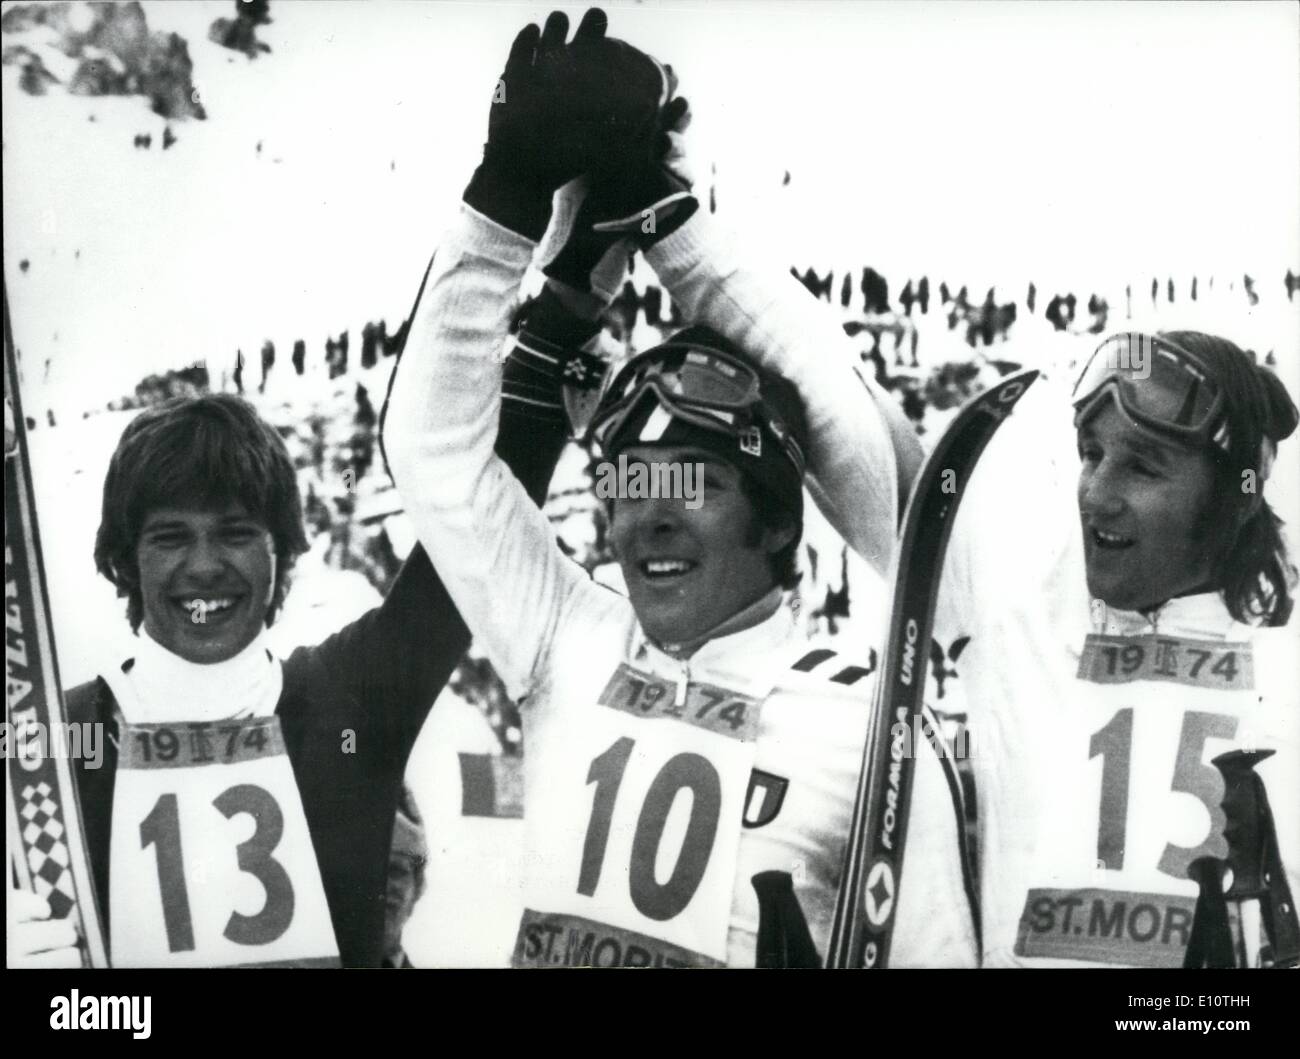 Febbraio 02, 1974 - Campionato Ski-World a San Moritz: Martedì, Italiano Gustav Thoeni già campione olimpico e campione del mondo 1972 a Sapporo, rinnovato il suo trionfo nel concorso di quest'anno a San Moritz vincendo lo slalom gigante. Secondo Austrian Hansi Hinterseer (sinistra), terzo italiano Piero Gros (destra) Foto Stock